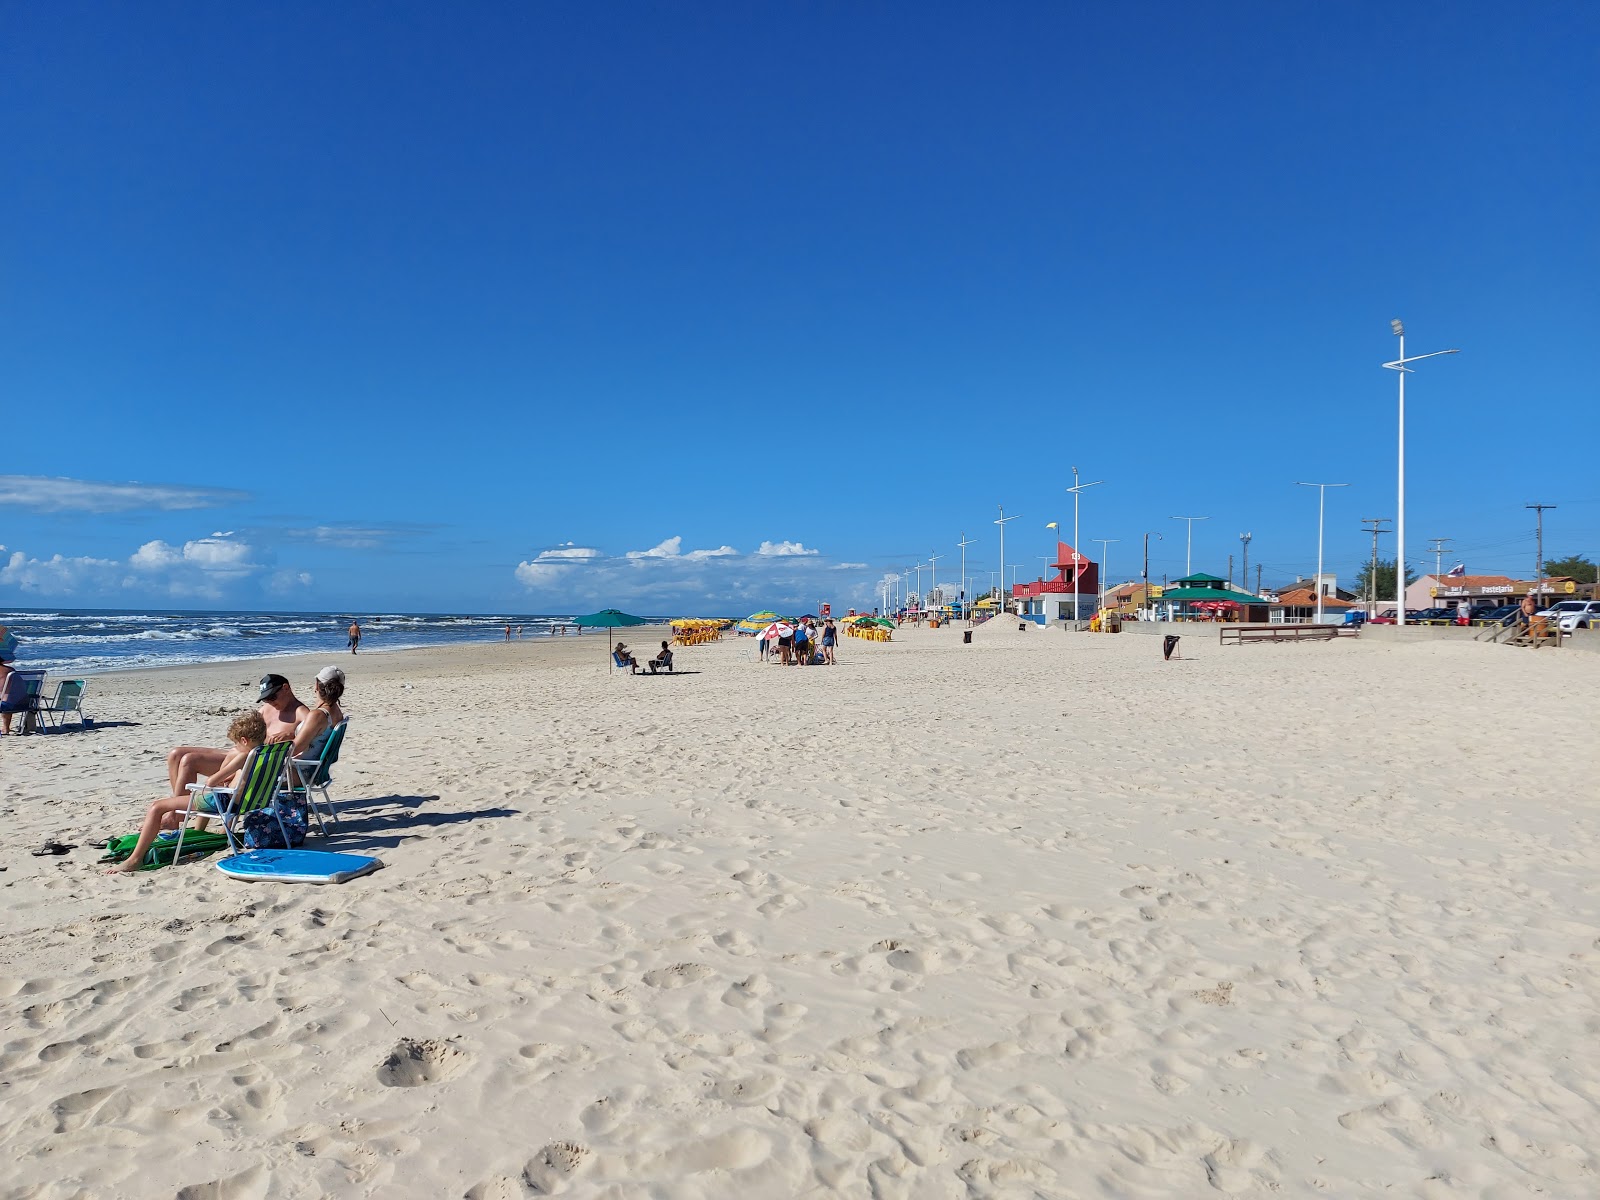 Praia de Imbe'in fotoğrafı parlak ince kum yüzey ile